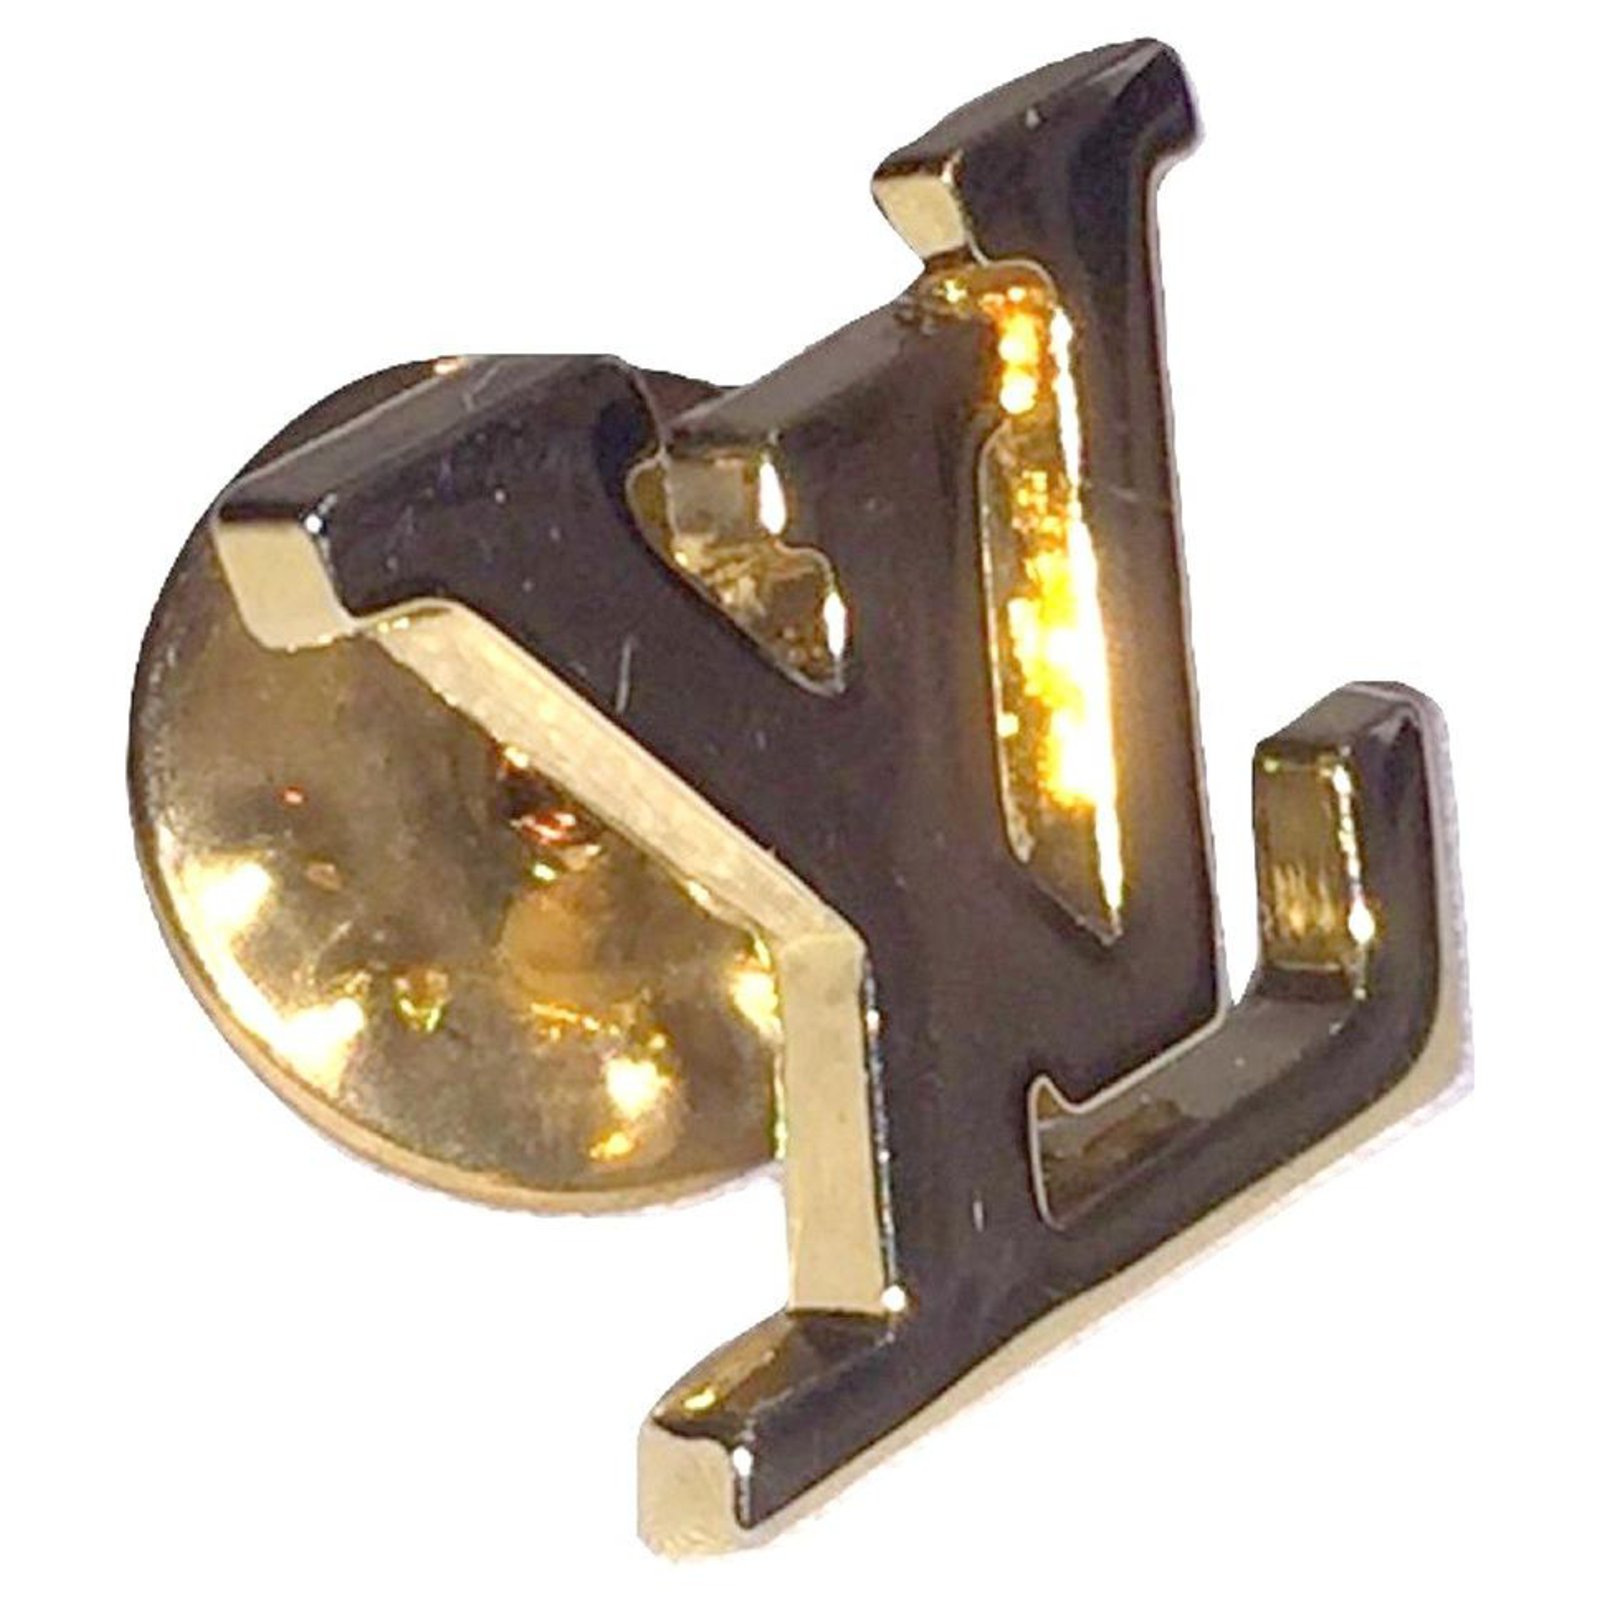 Pin on Louis Vuitton Monogram